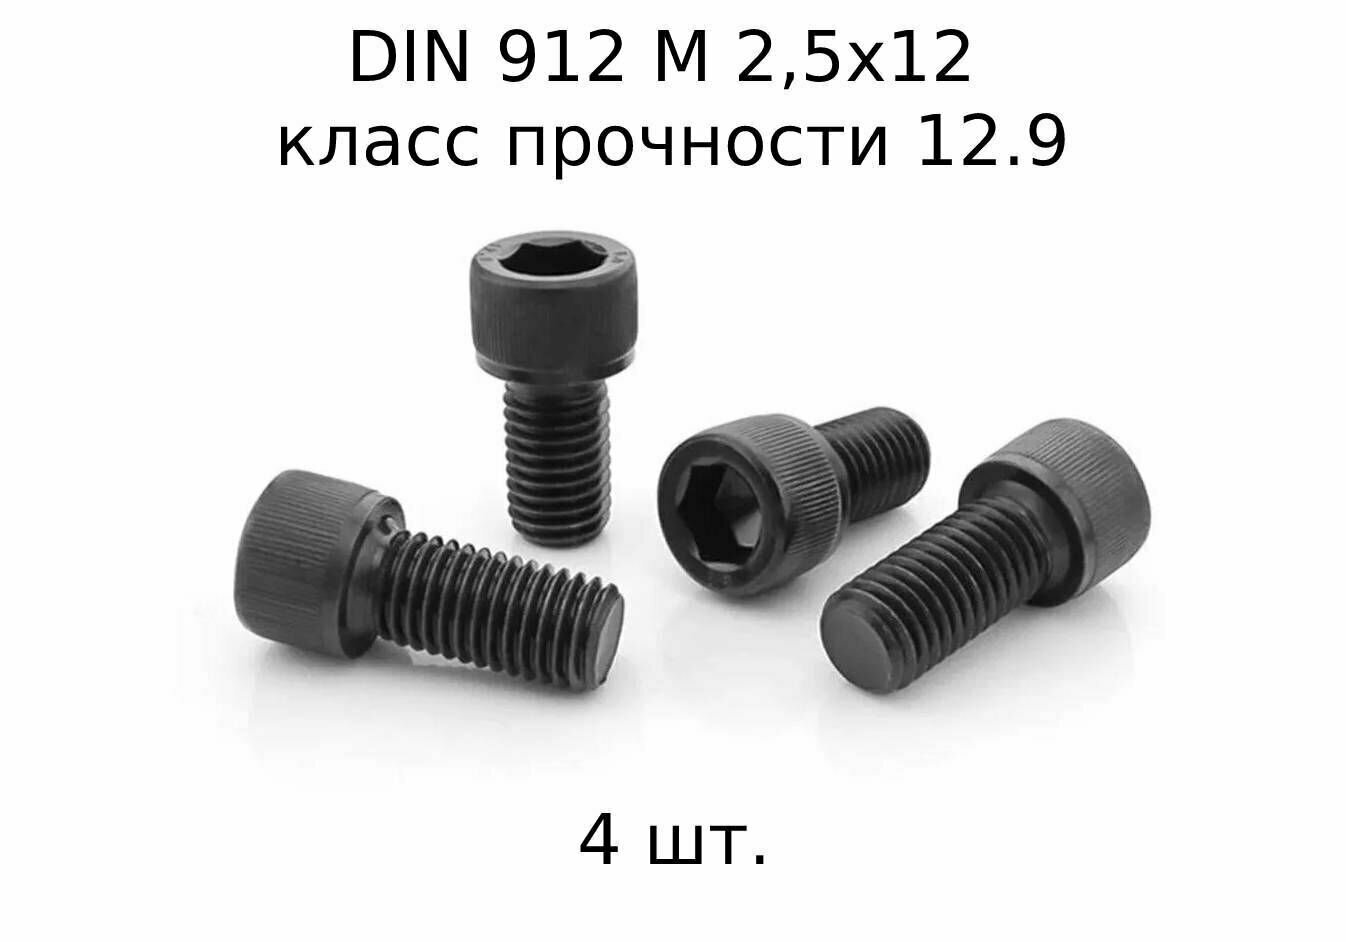 Винт DIN 912 M 2,5x12 с внутренним шестигранником, класс прочности 12.9, оксидированные, черные 4 шт.